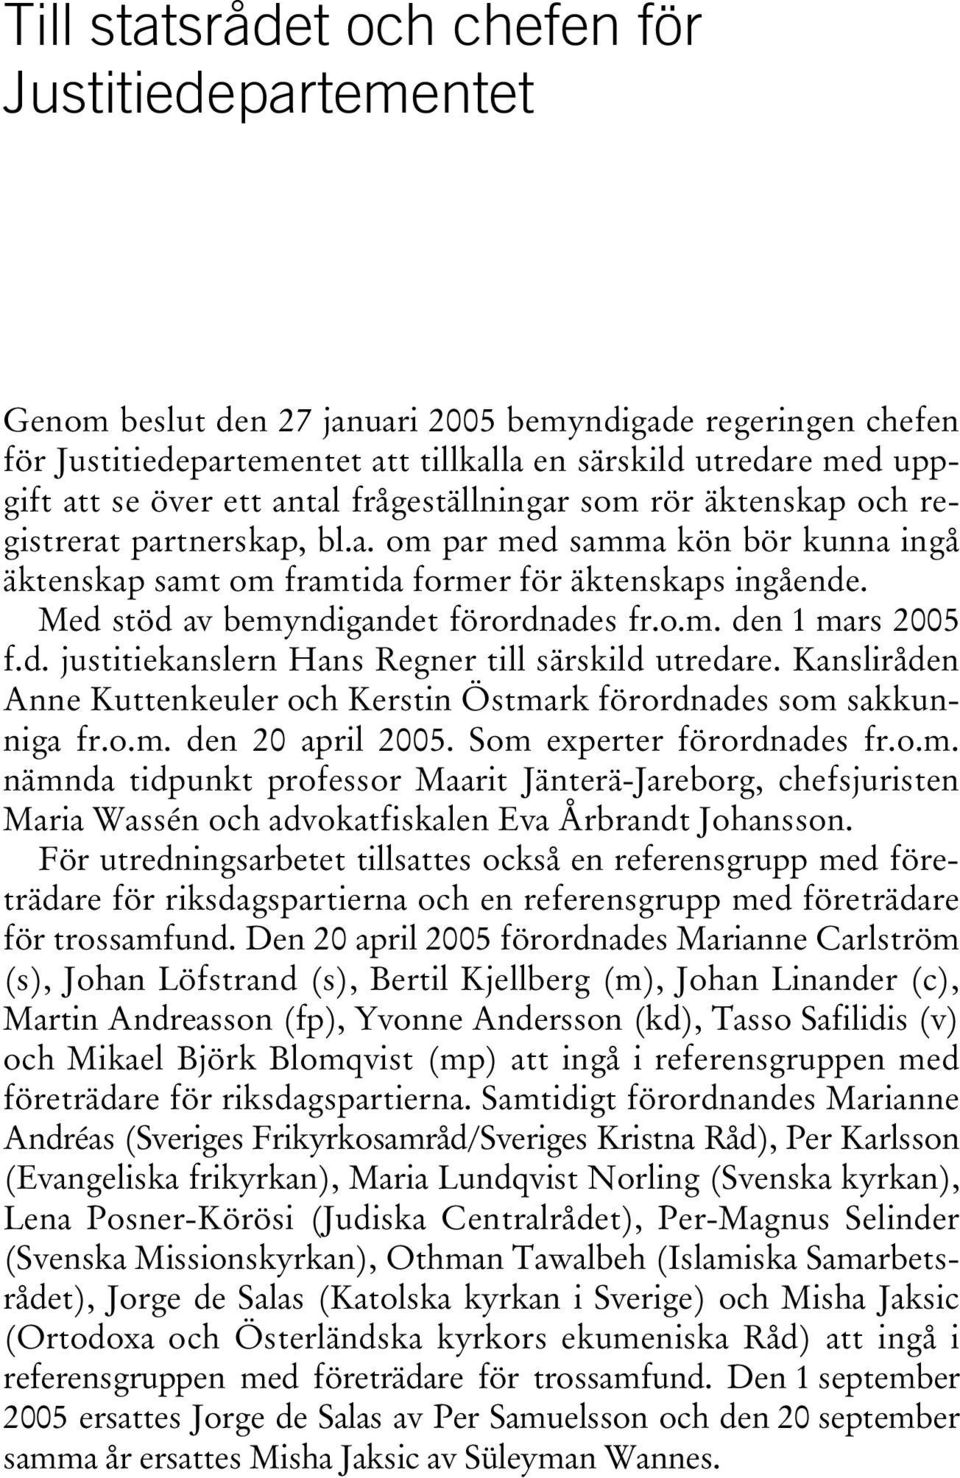 Med stöd av bemyndigandet förordnades fr.o.m. den 1 mars 2005 f.d. justitiekanslern Hans Regner till särskild utredare. Kansliråden Anne Kuttenkeuler och Kerstin Östmark förordnades som sakkunniga fr.